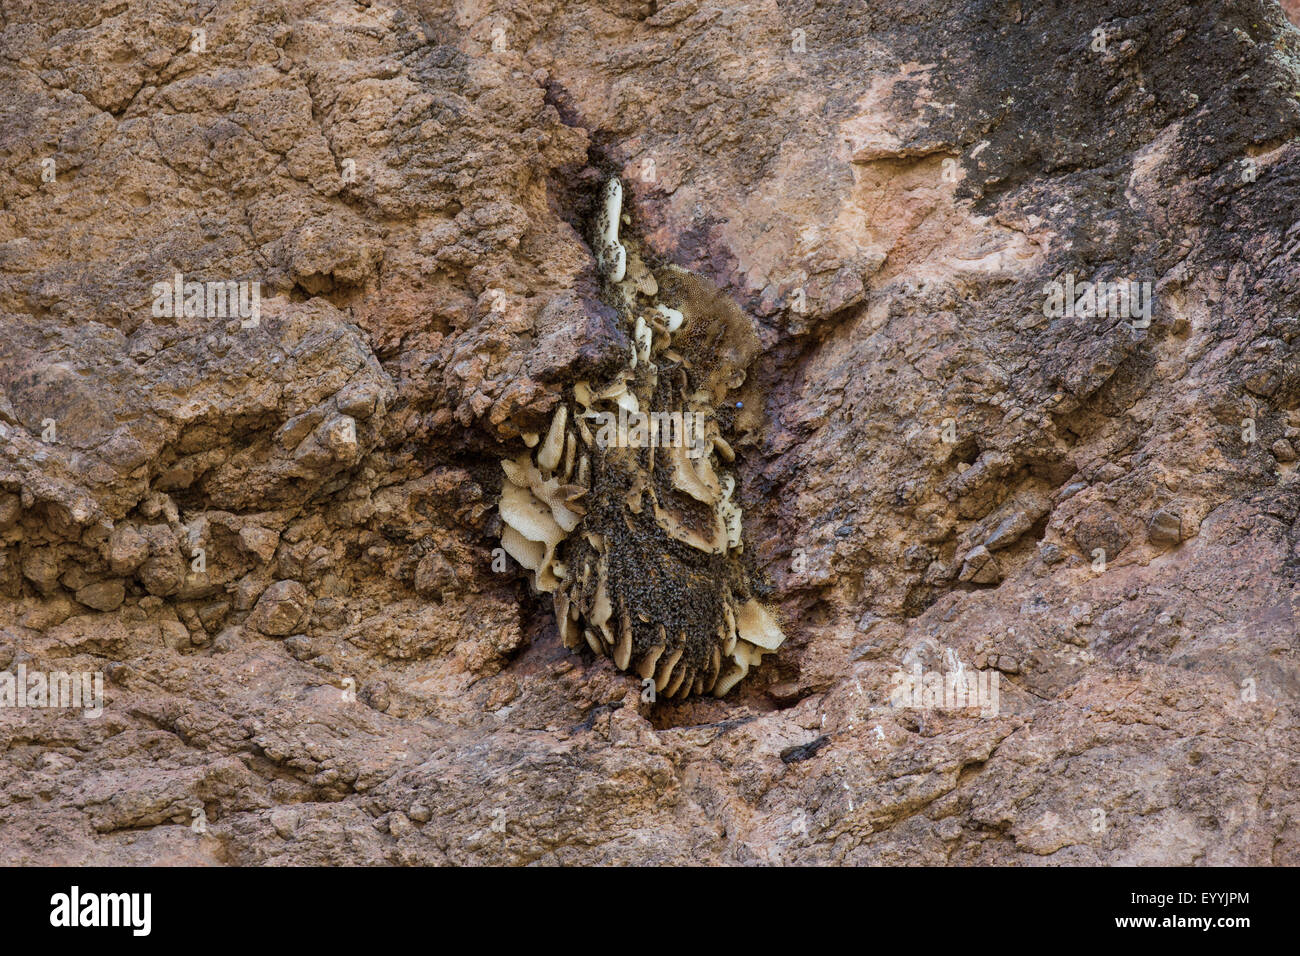 Arnia di api (bombi, miele api e le API di orchidee) (Apidae), uno sciame di api con un sacco di libero-hanging favi sotto uno sperone di roccia, USA, Arizona, Phoenix Foto Stock